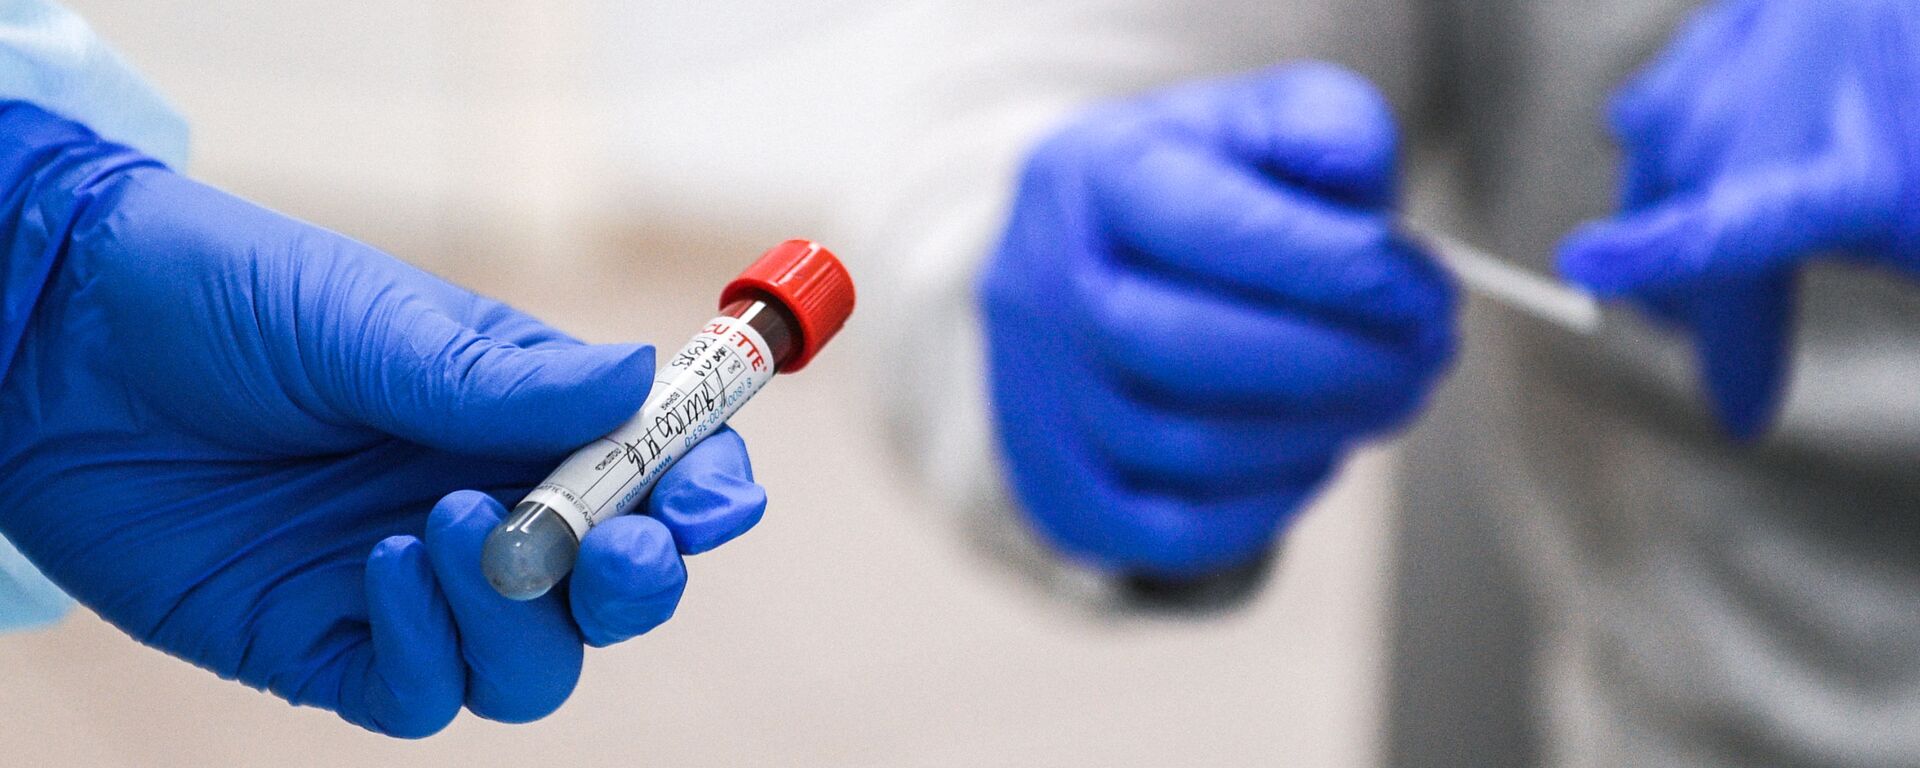 Пробирка с кровью пациента, сдавшего тест на наличие антител к вирусу SARS-CoV-2 - Sputnik Молдова, 1920, 03.06.2021